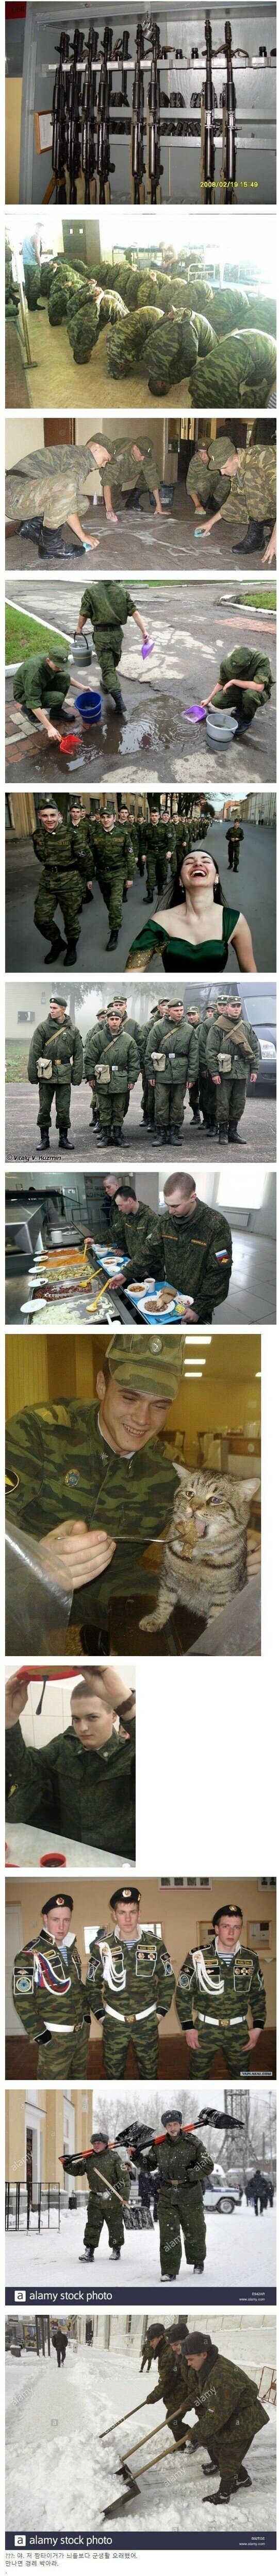 러시아 군대에서 익숙한 냄새가 나는.EU